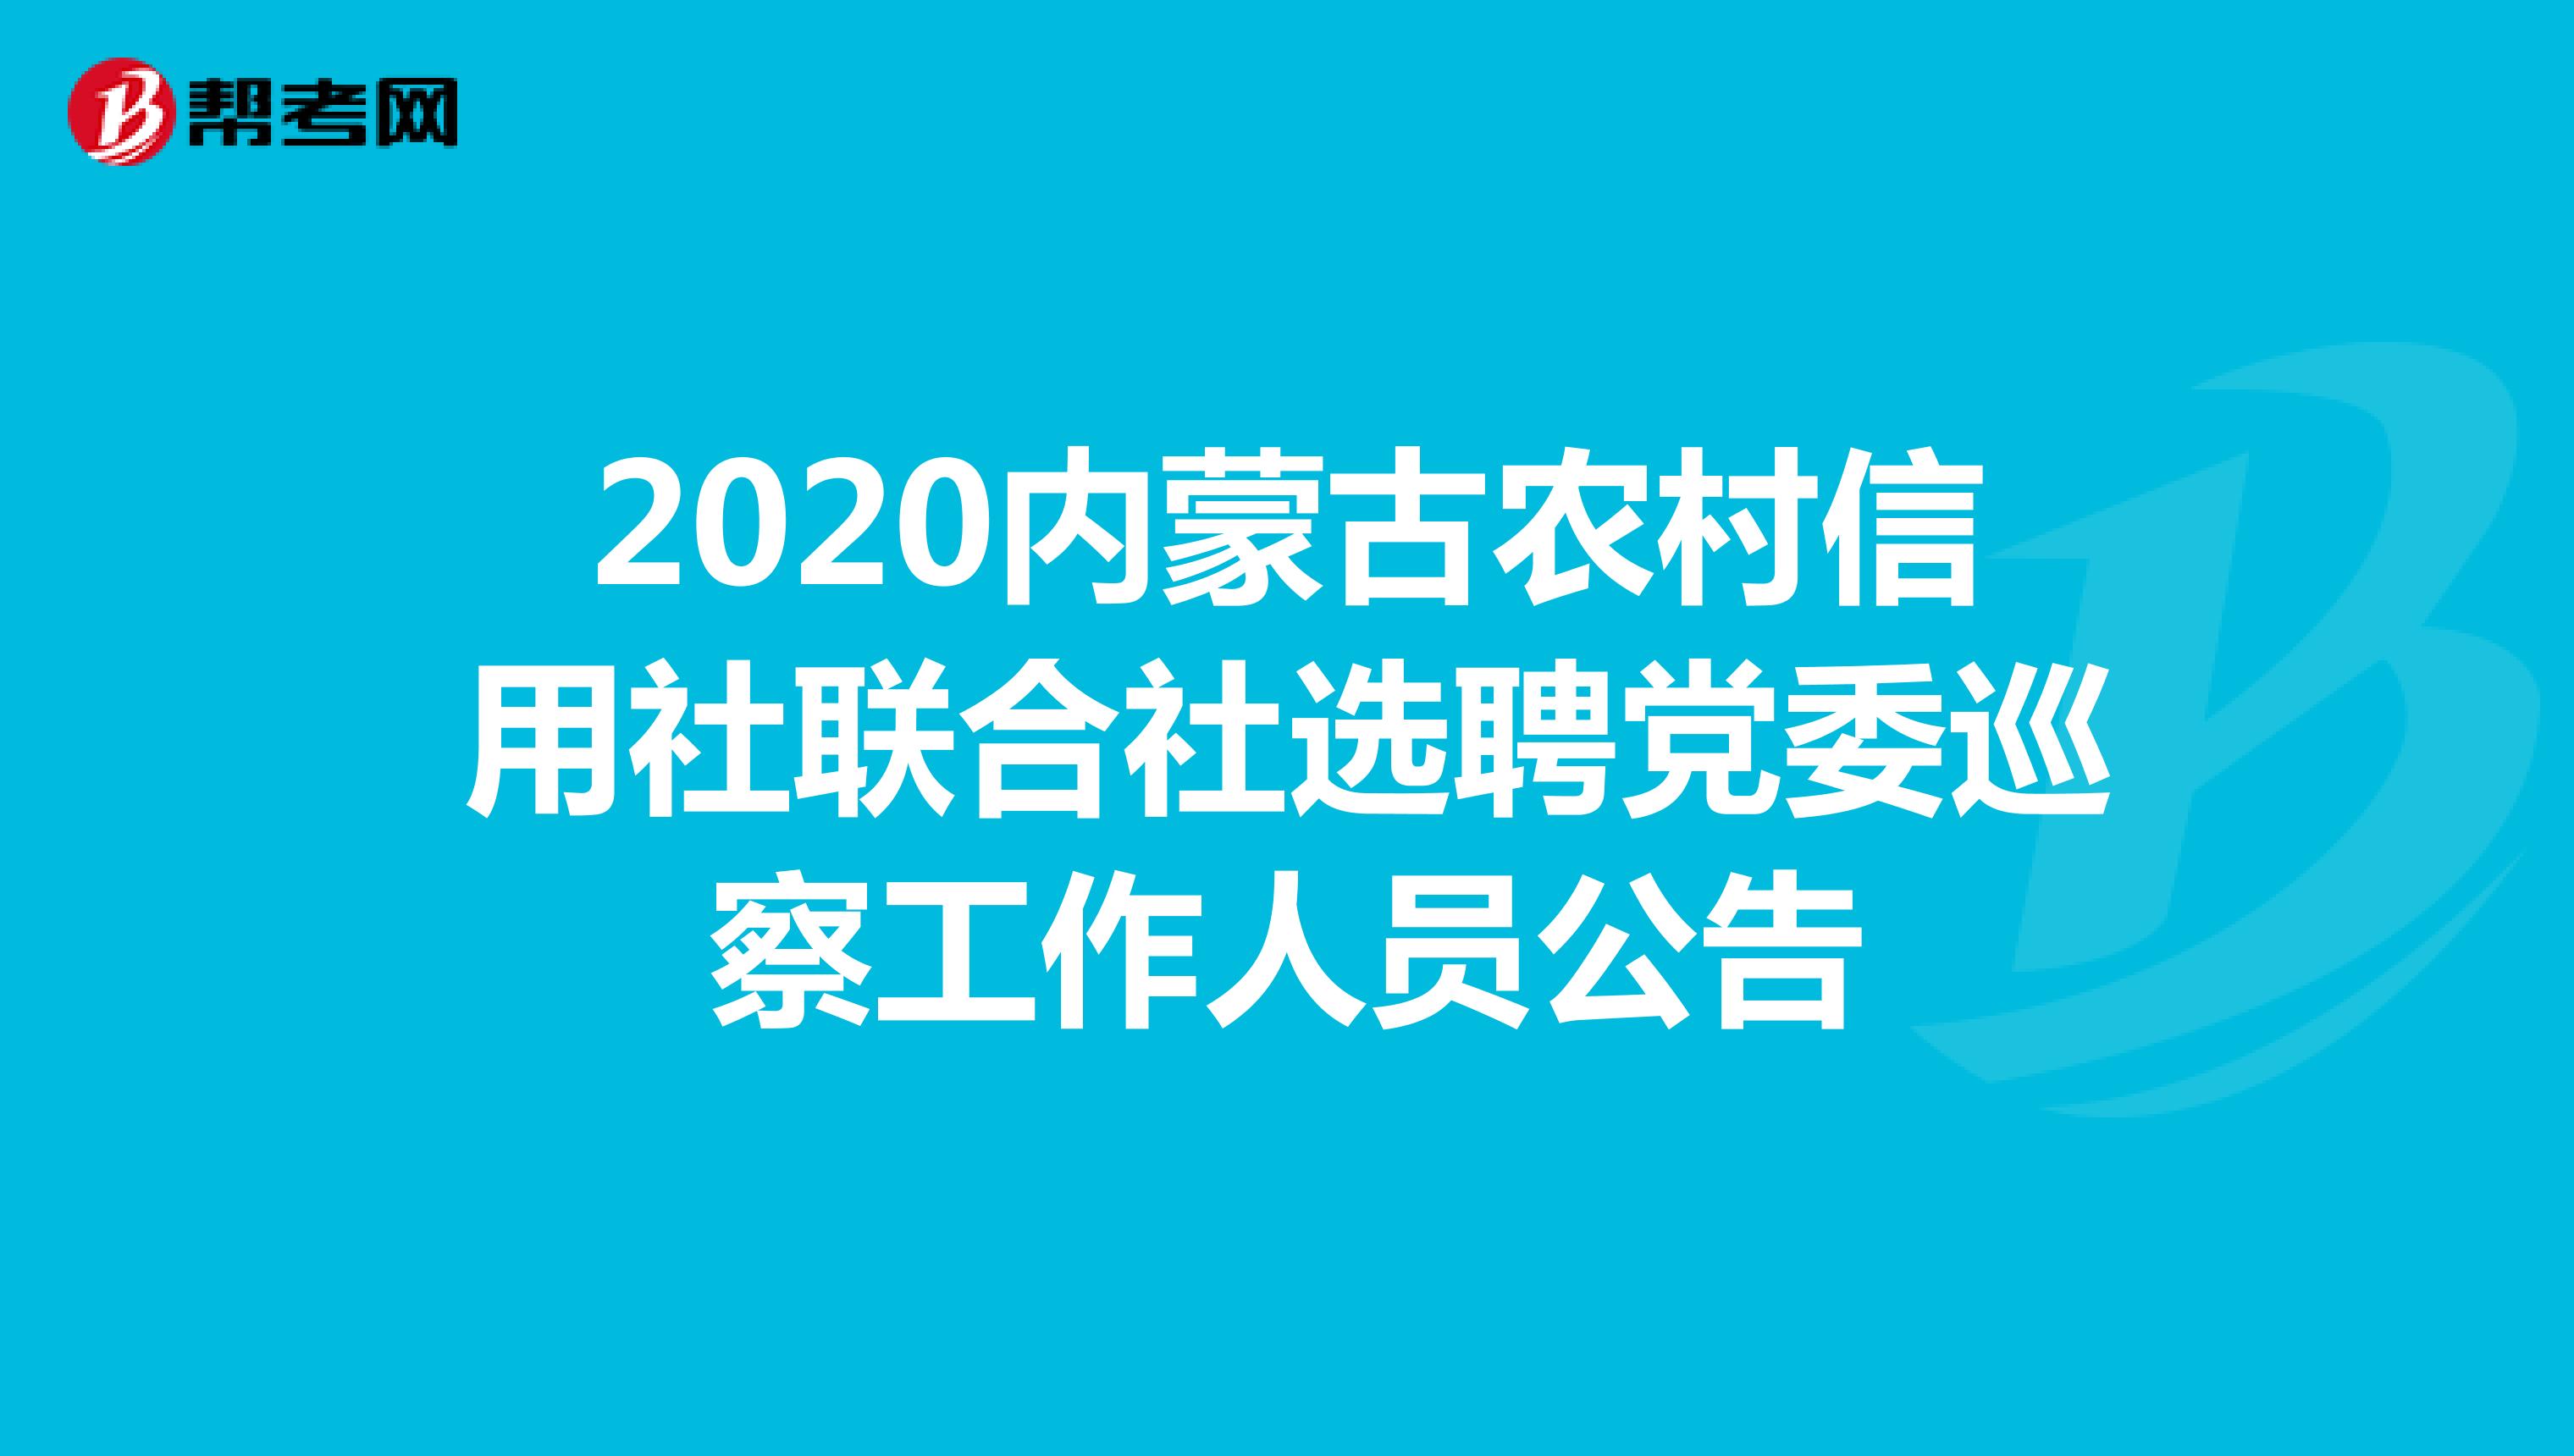 2020内蒙古农村信用社联合社选聘党委巡察工作人员公告